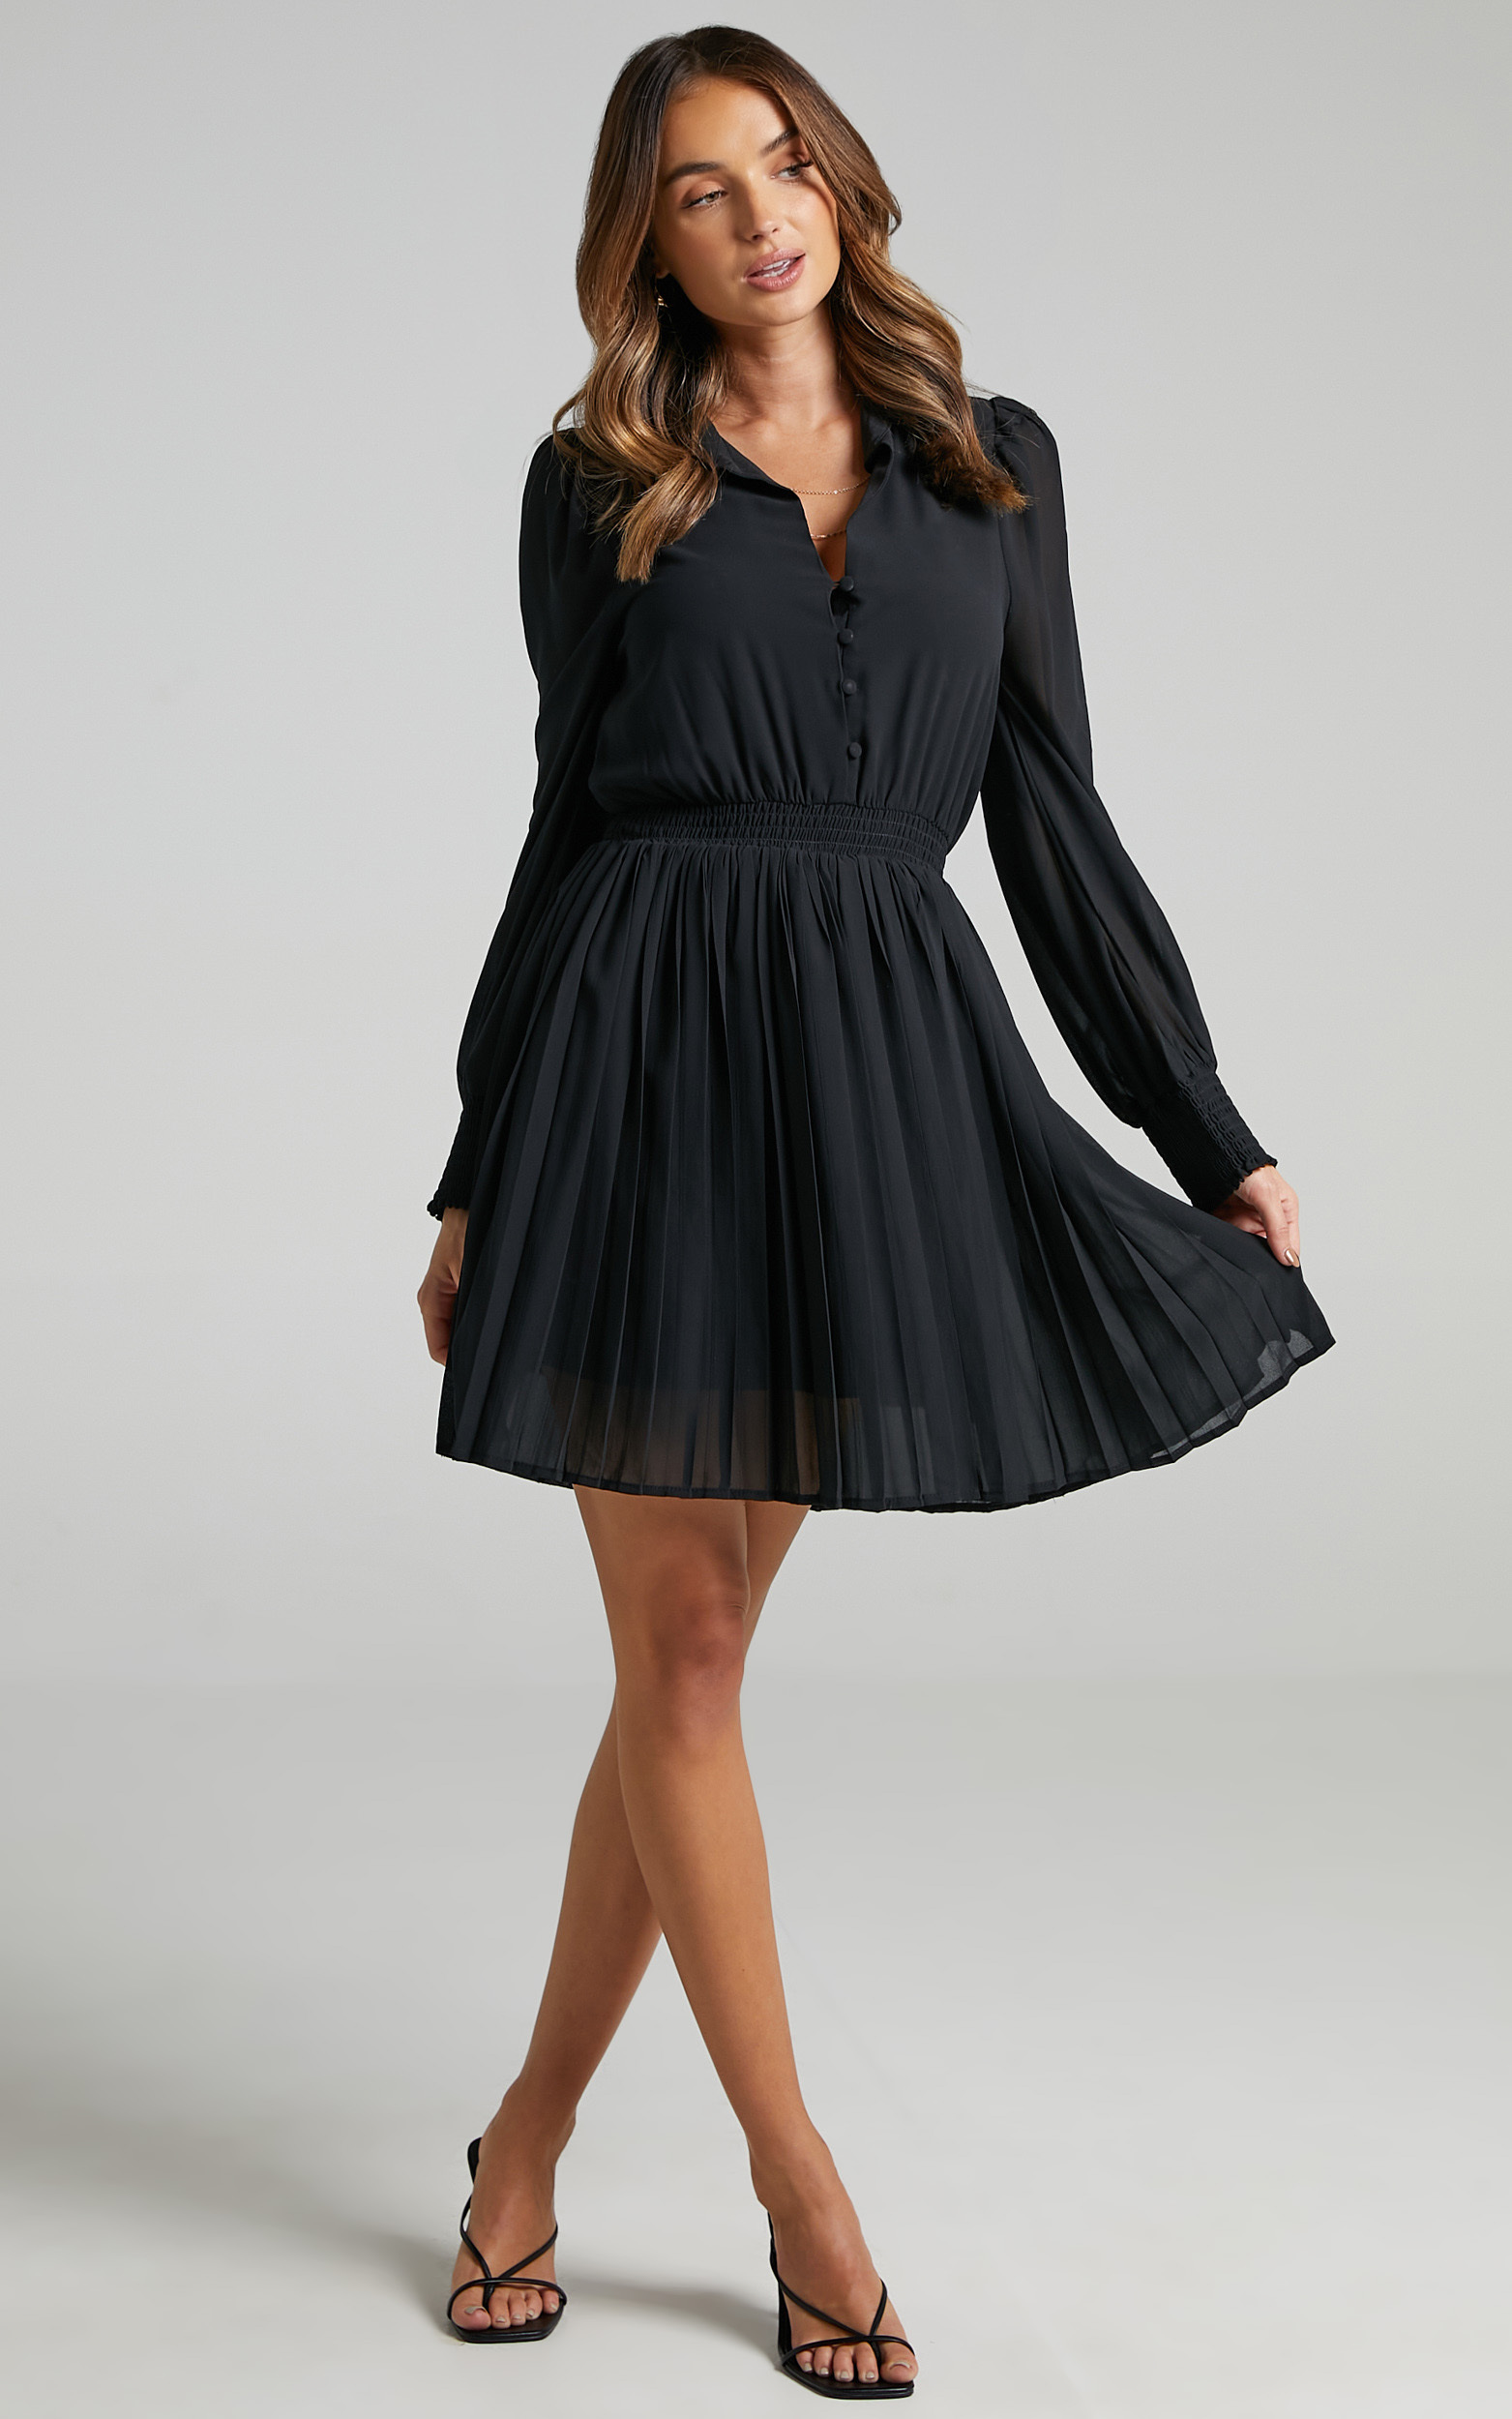 Carmi Dress in Black - 06, BLK1, hi-res image number null